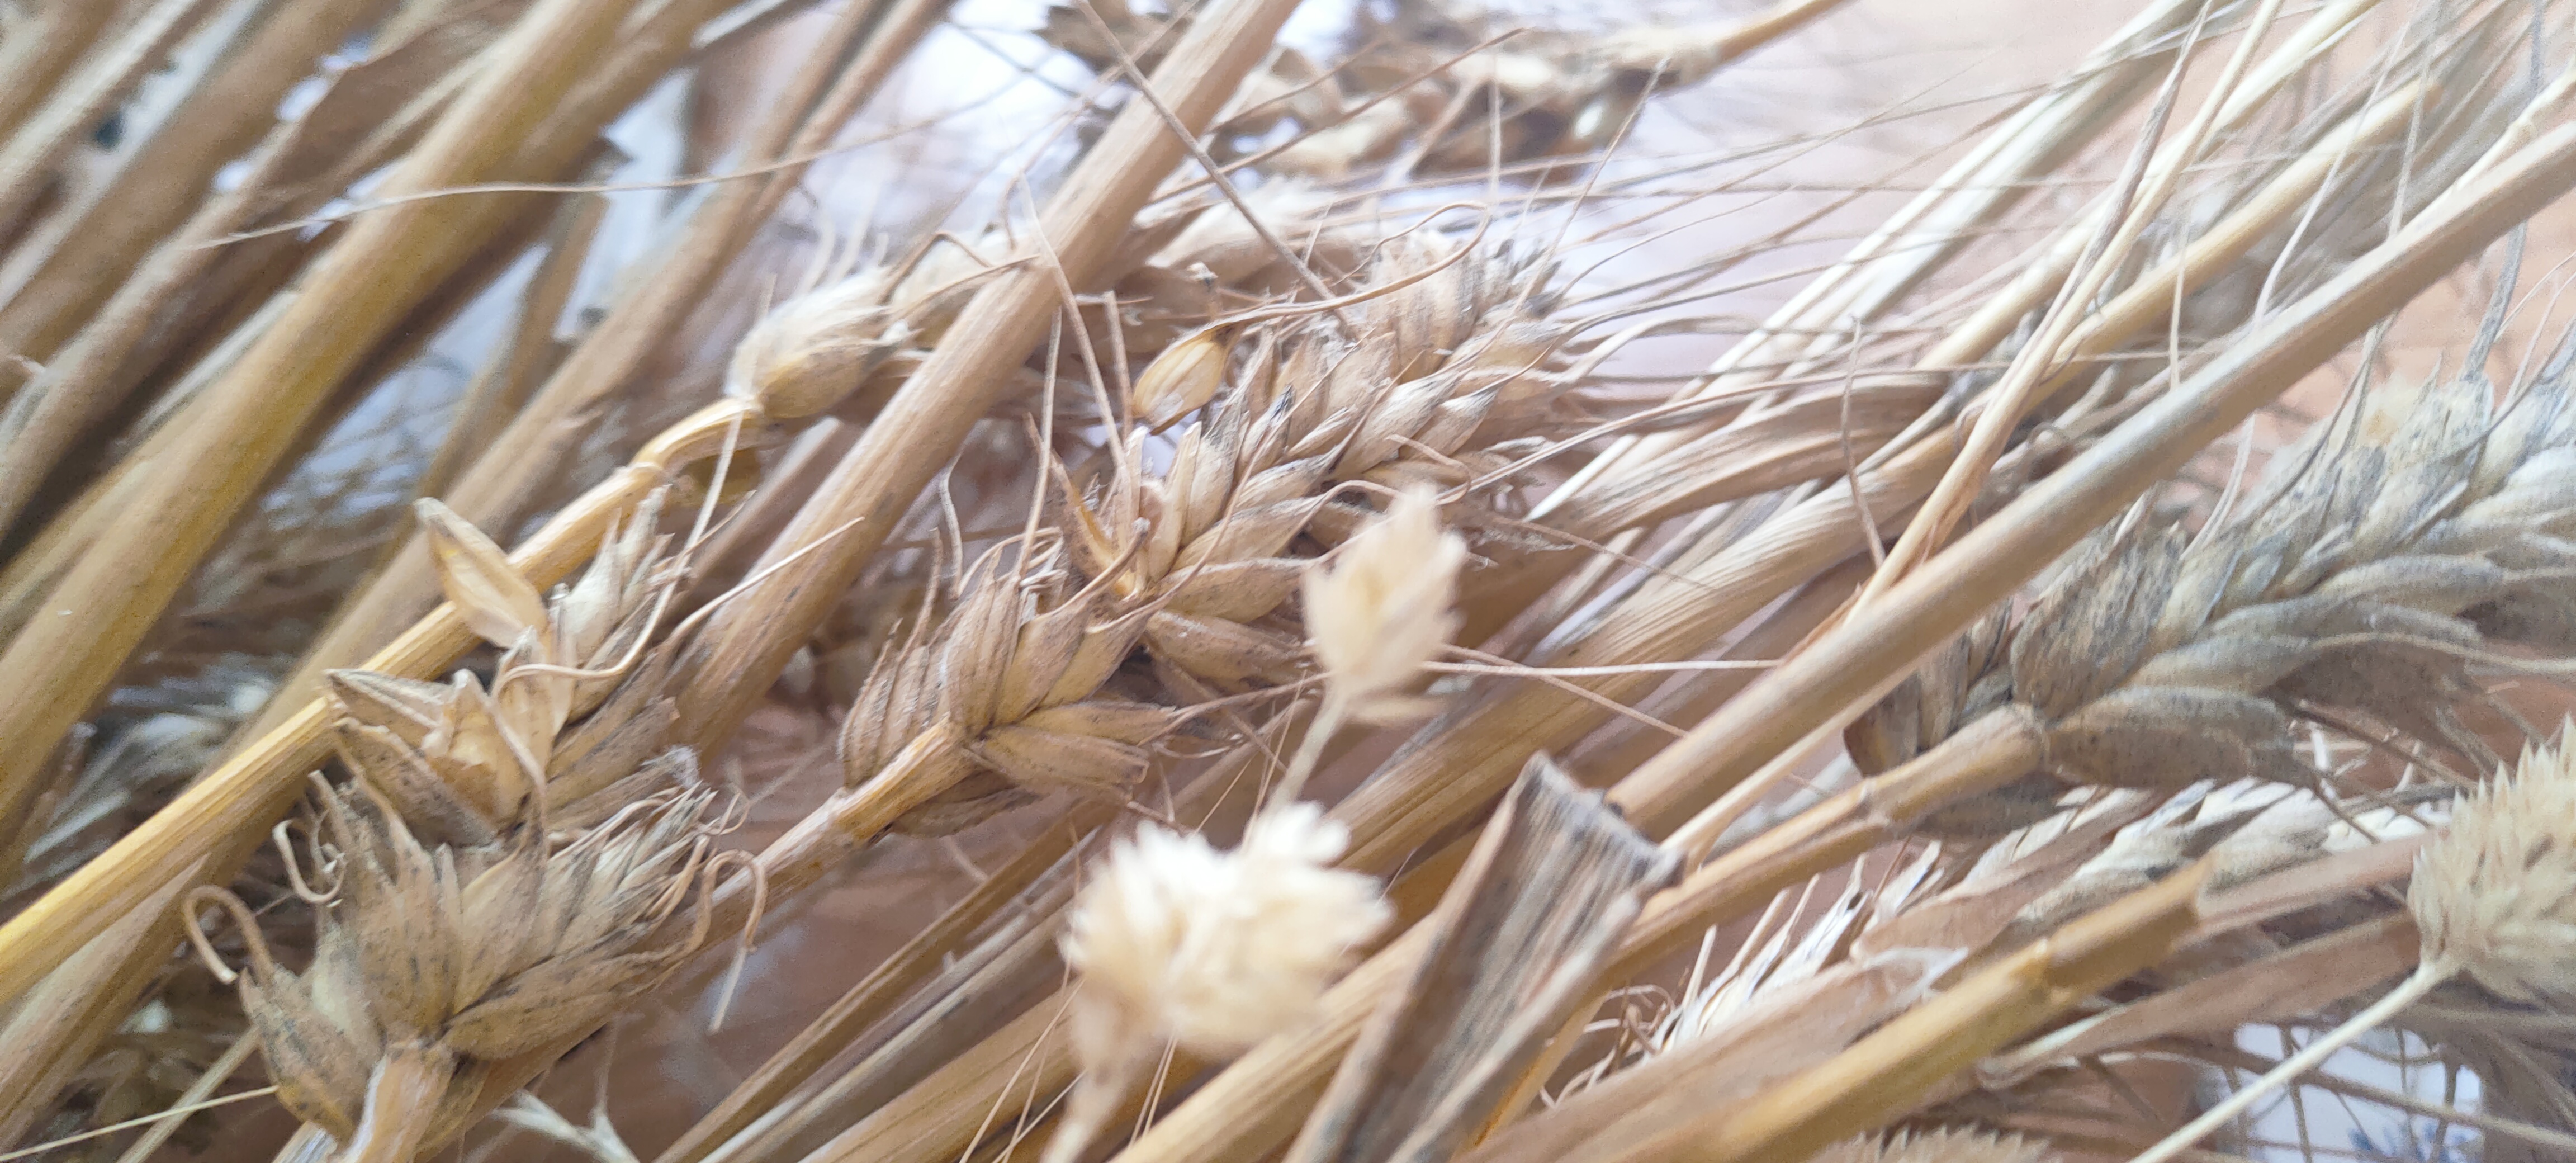 أستاذ زراعة الزقازيق ينجح في استباط طفرات من القمح مقاومة عالية للملوحة (6)